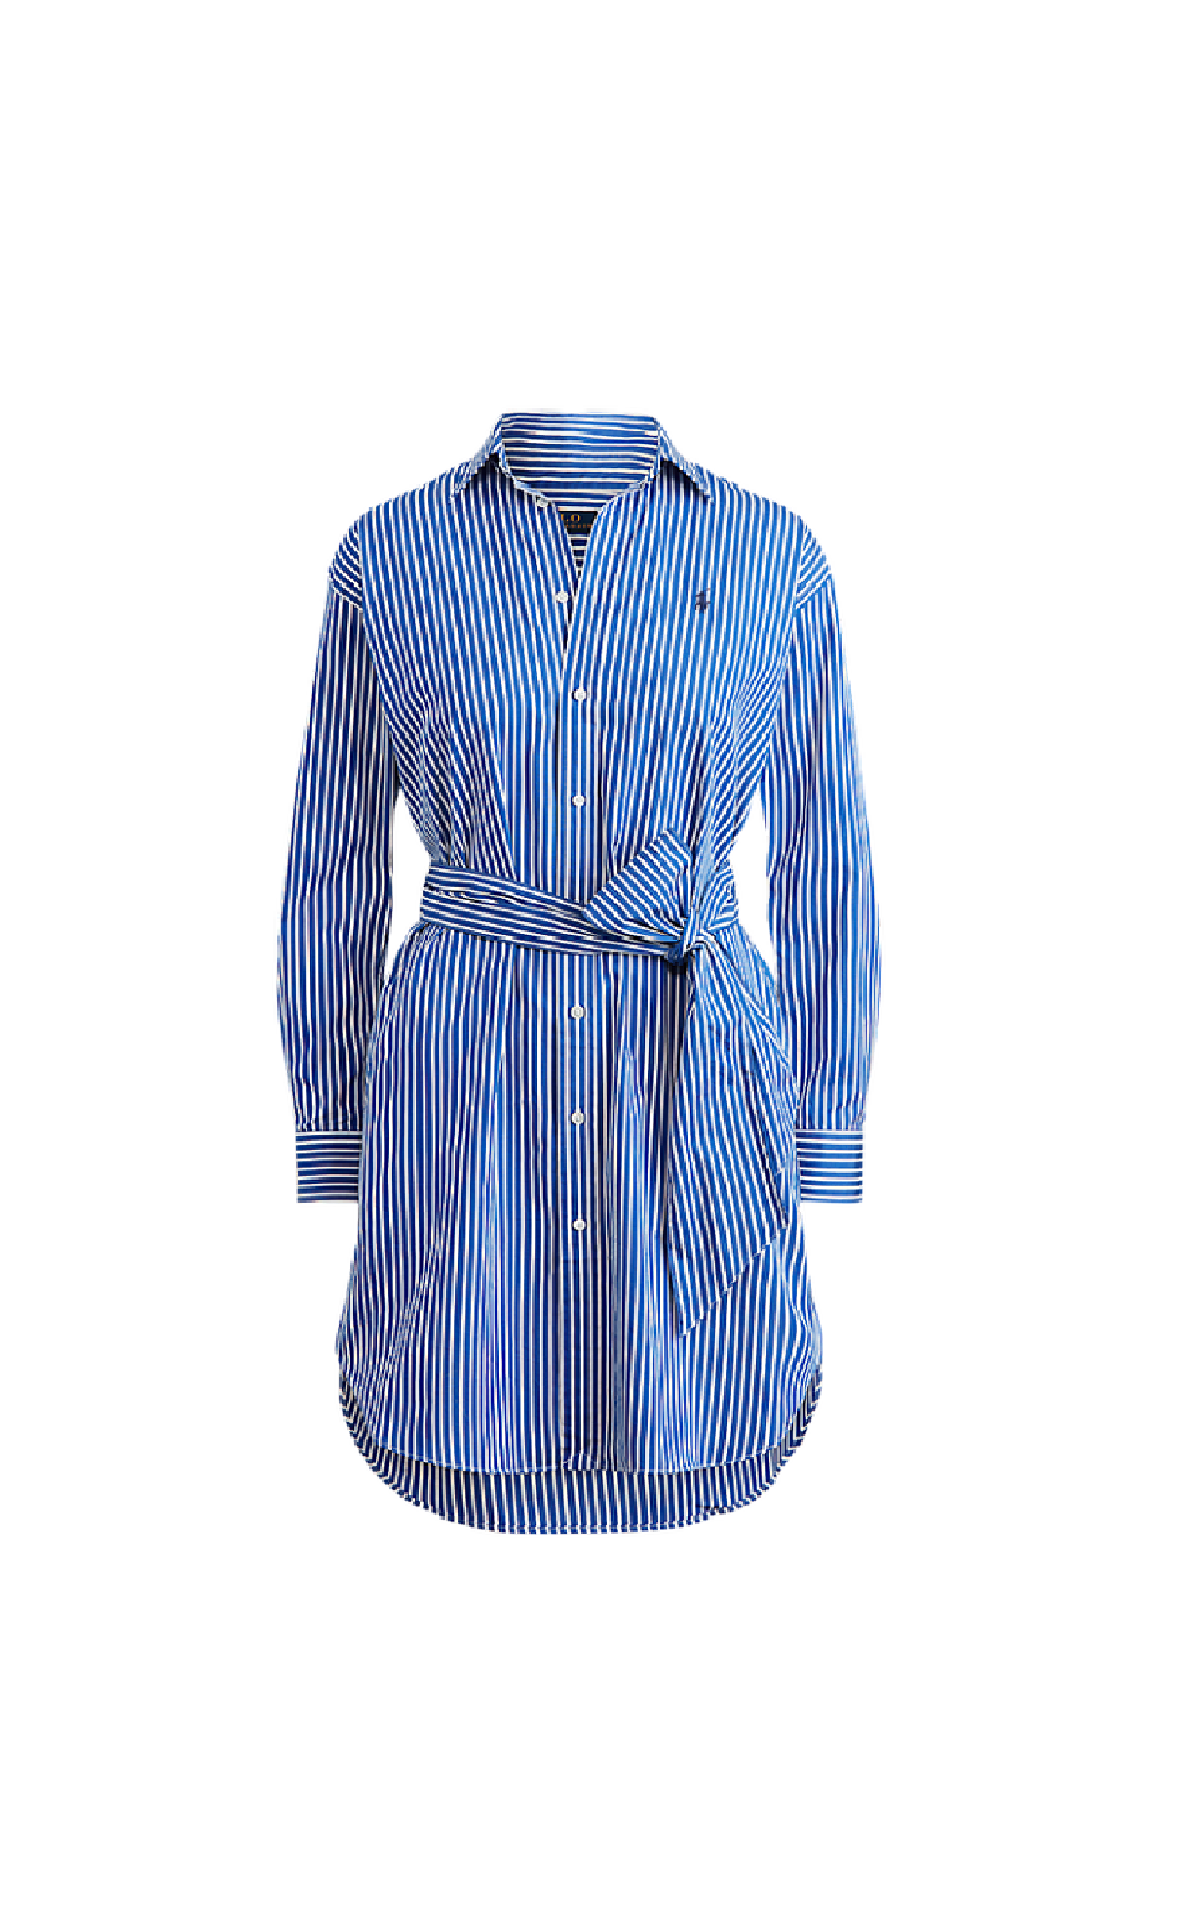 Striped shirt dress with belt Polo Ralph Lauren Women